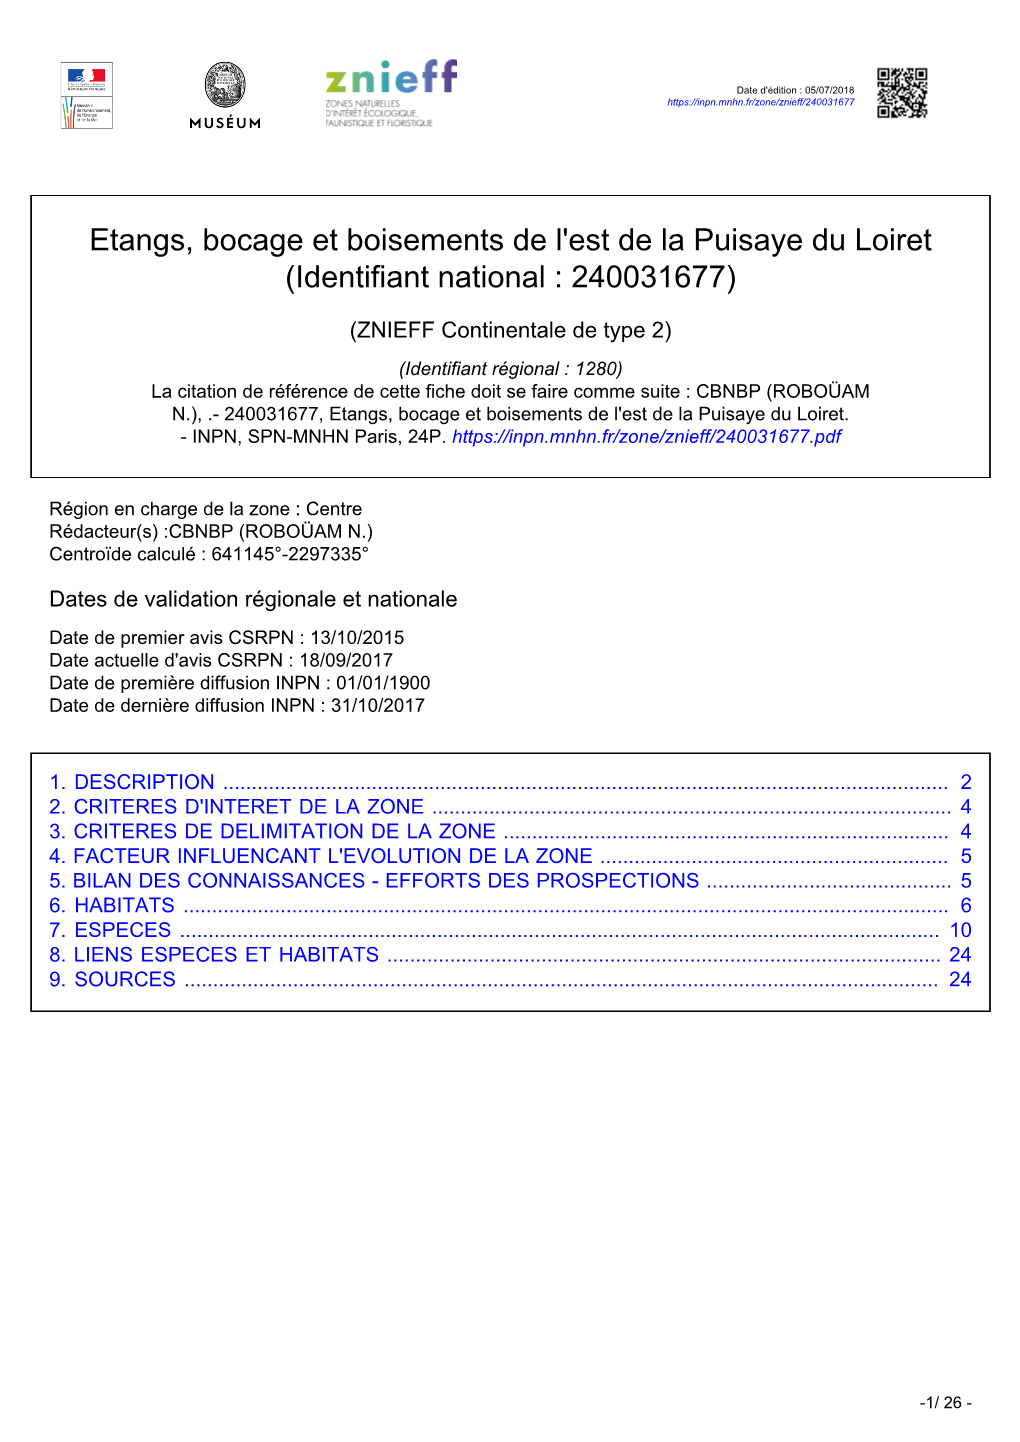 Etangs, Bocage Et Boisements De L'est De La Puisaye Du Loiret (Identifiant National : 240031677)